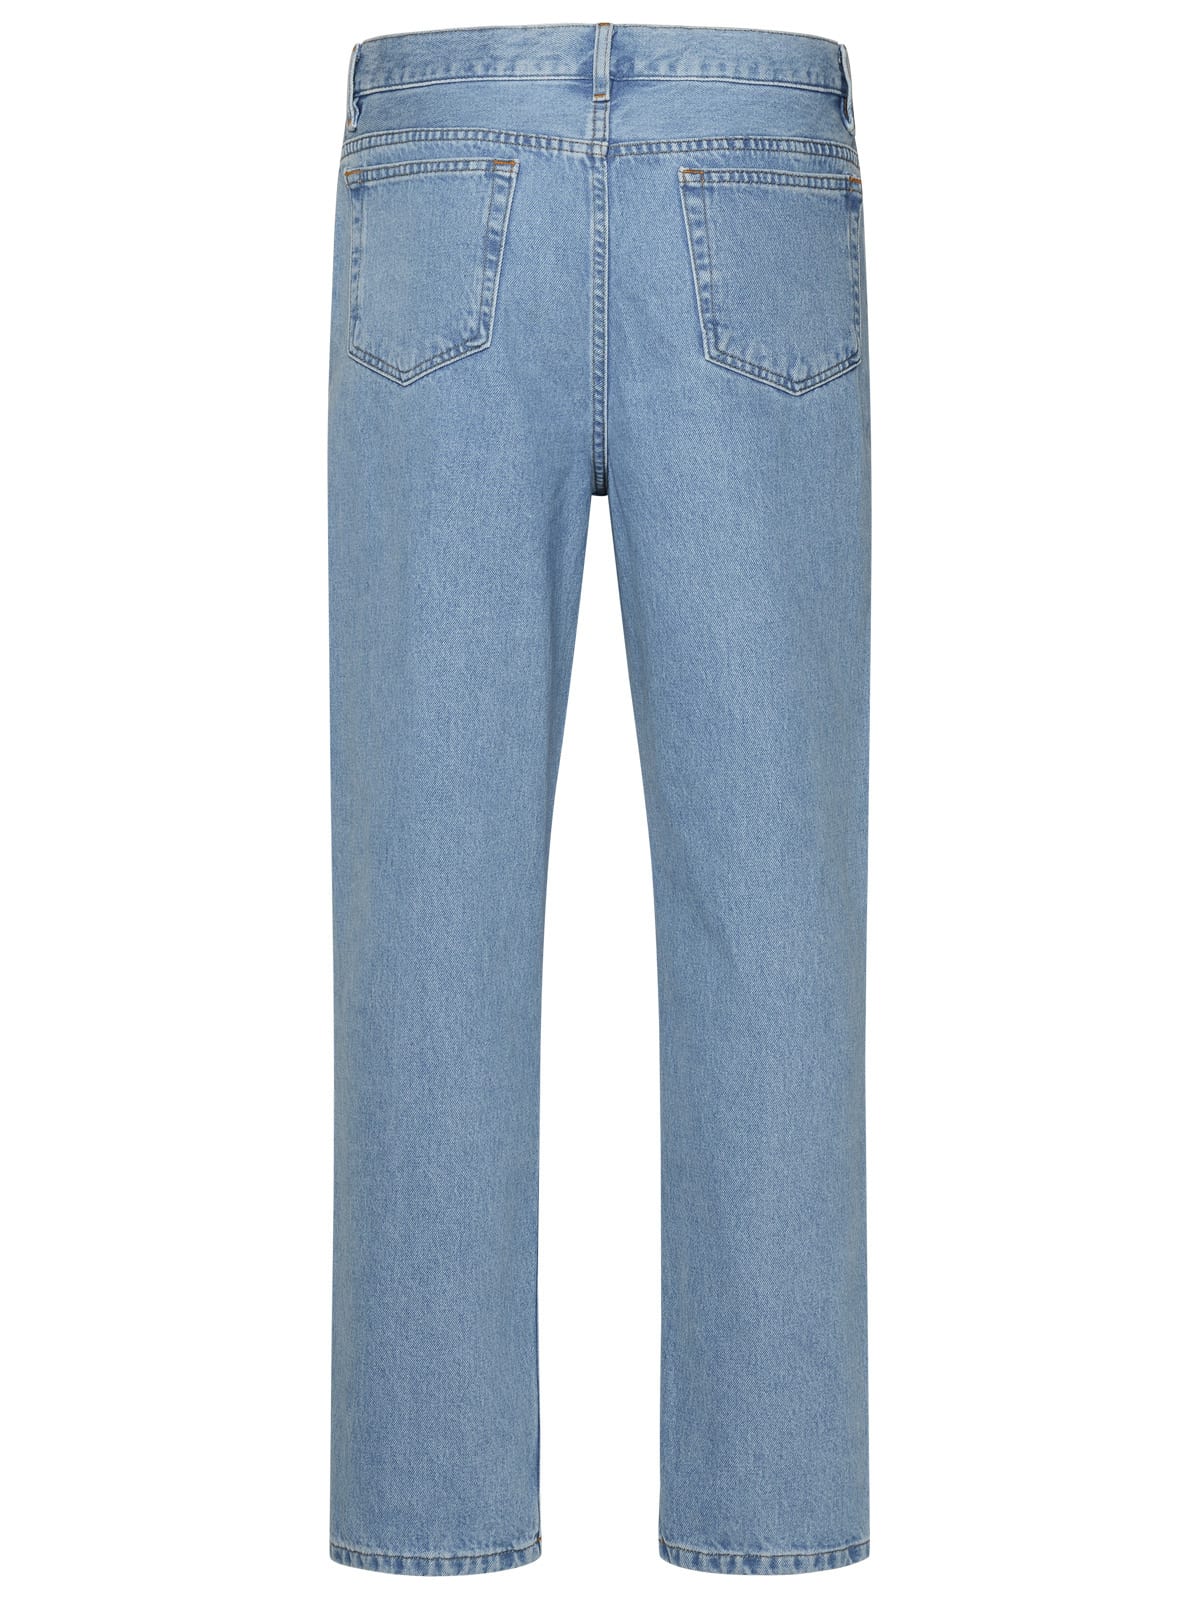 Shop Apc Martin Light Blue Cotton Jeans